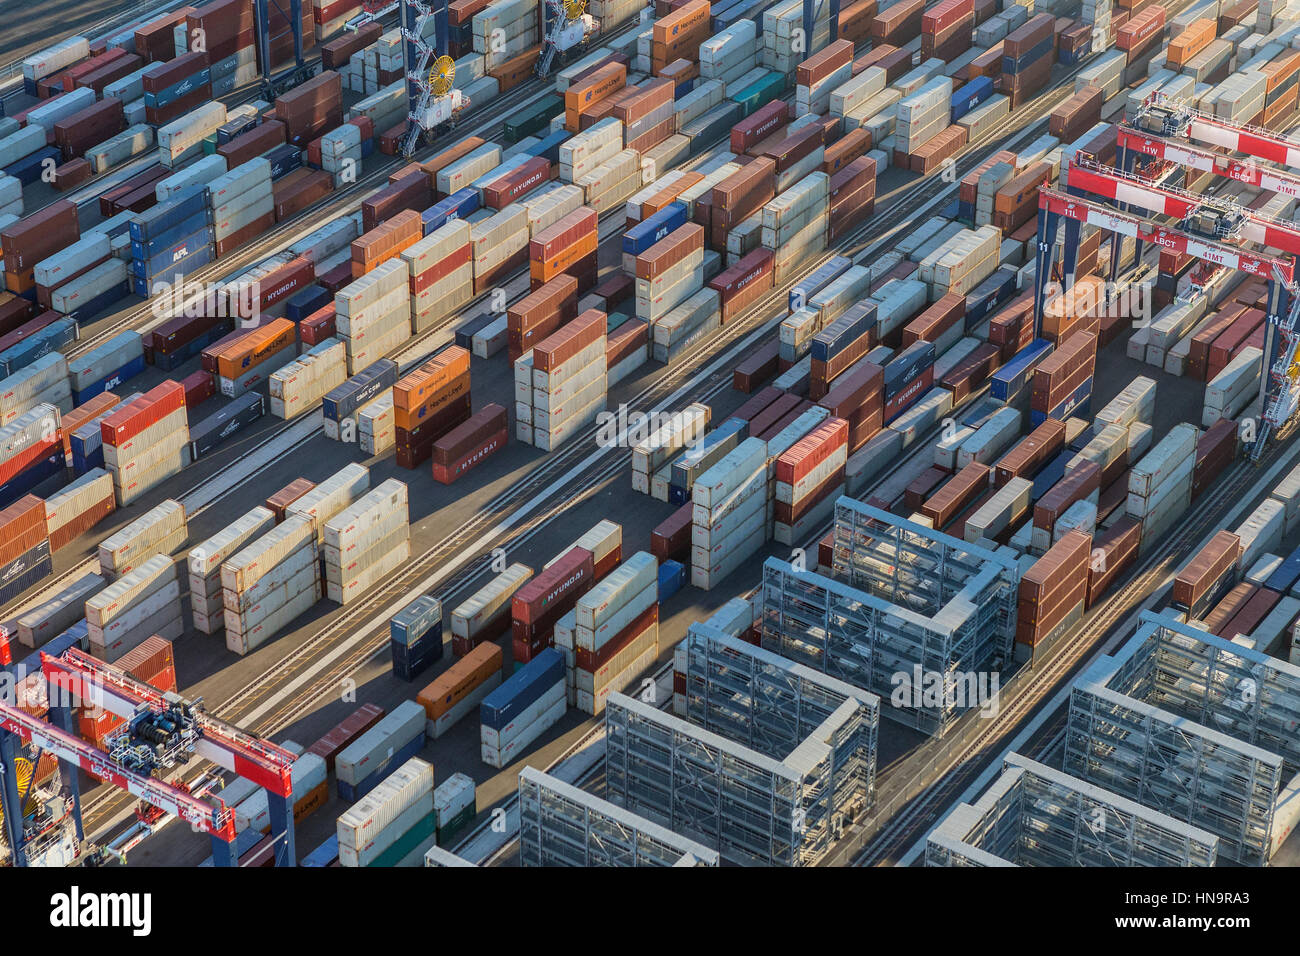 Los Angeles, Kalifornien, USA - 16. August 2016: Am Nachmittag Luftaufnahme der Frachtschiffahrt Container gestapelt auf Docks. Stockfoto